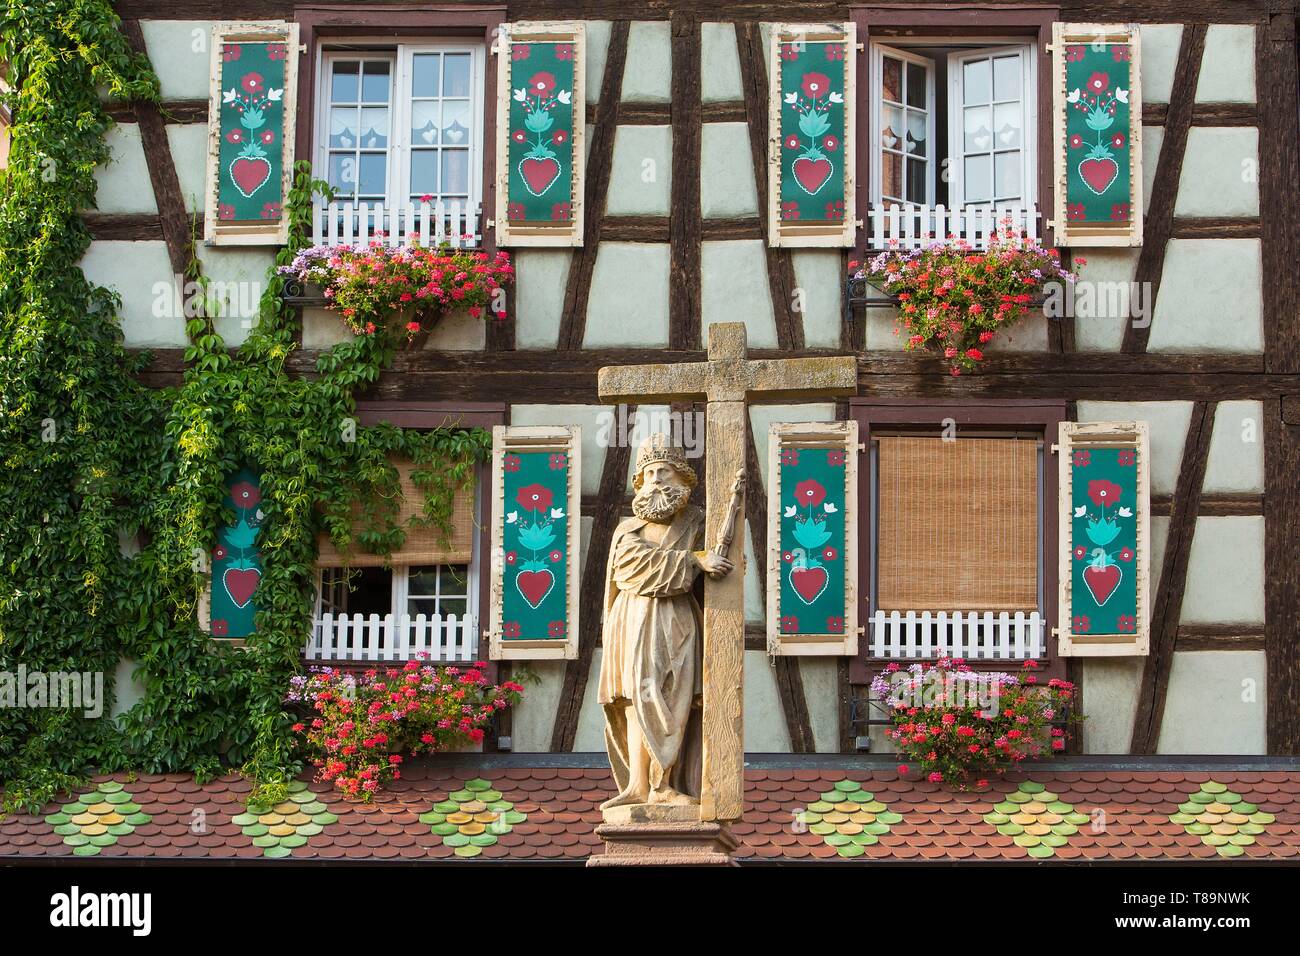 Francia, Haut Rhin, Route des Vins d'Alsace, Kaysersberg etichettati Les Plus Beaux Villages de France (uno dei più bei villaggi di Francia), la statua dell'Imperatore Constantin davanti a una casa tradizionale Foto Stock